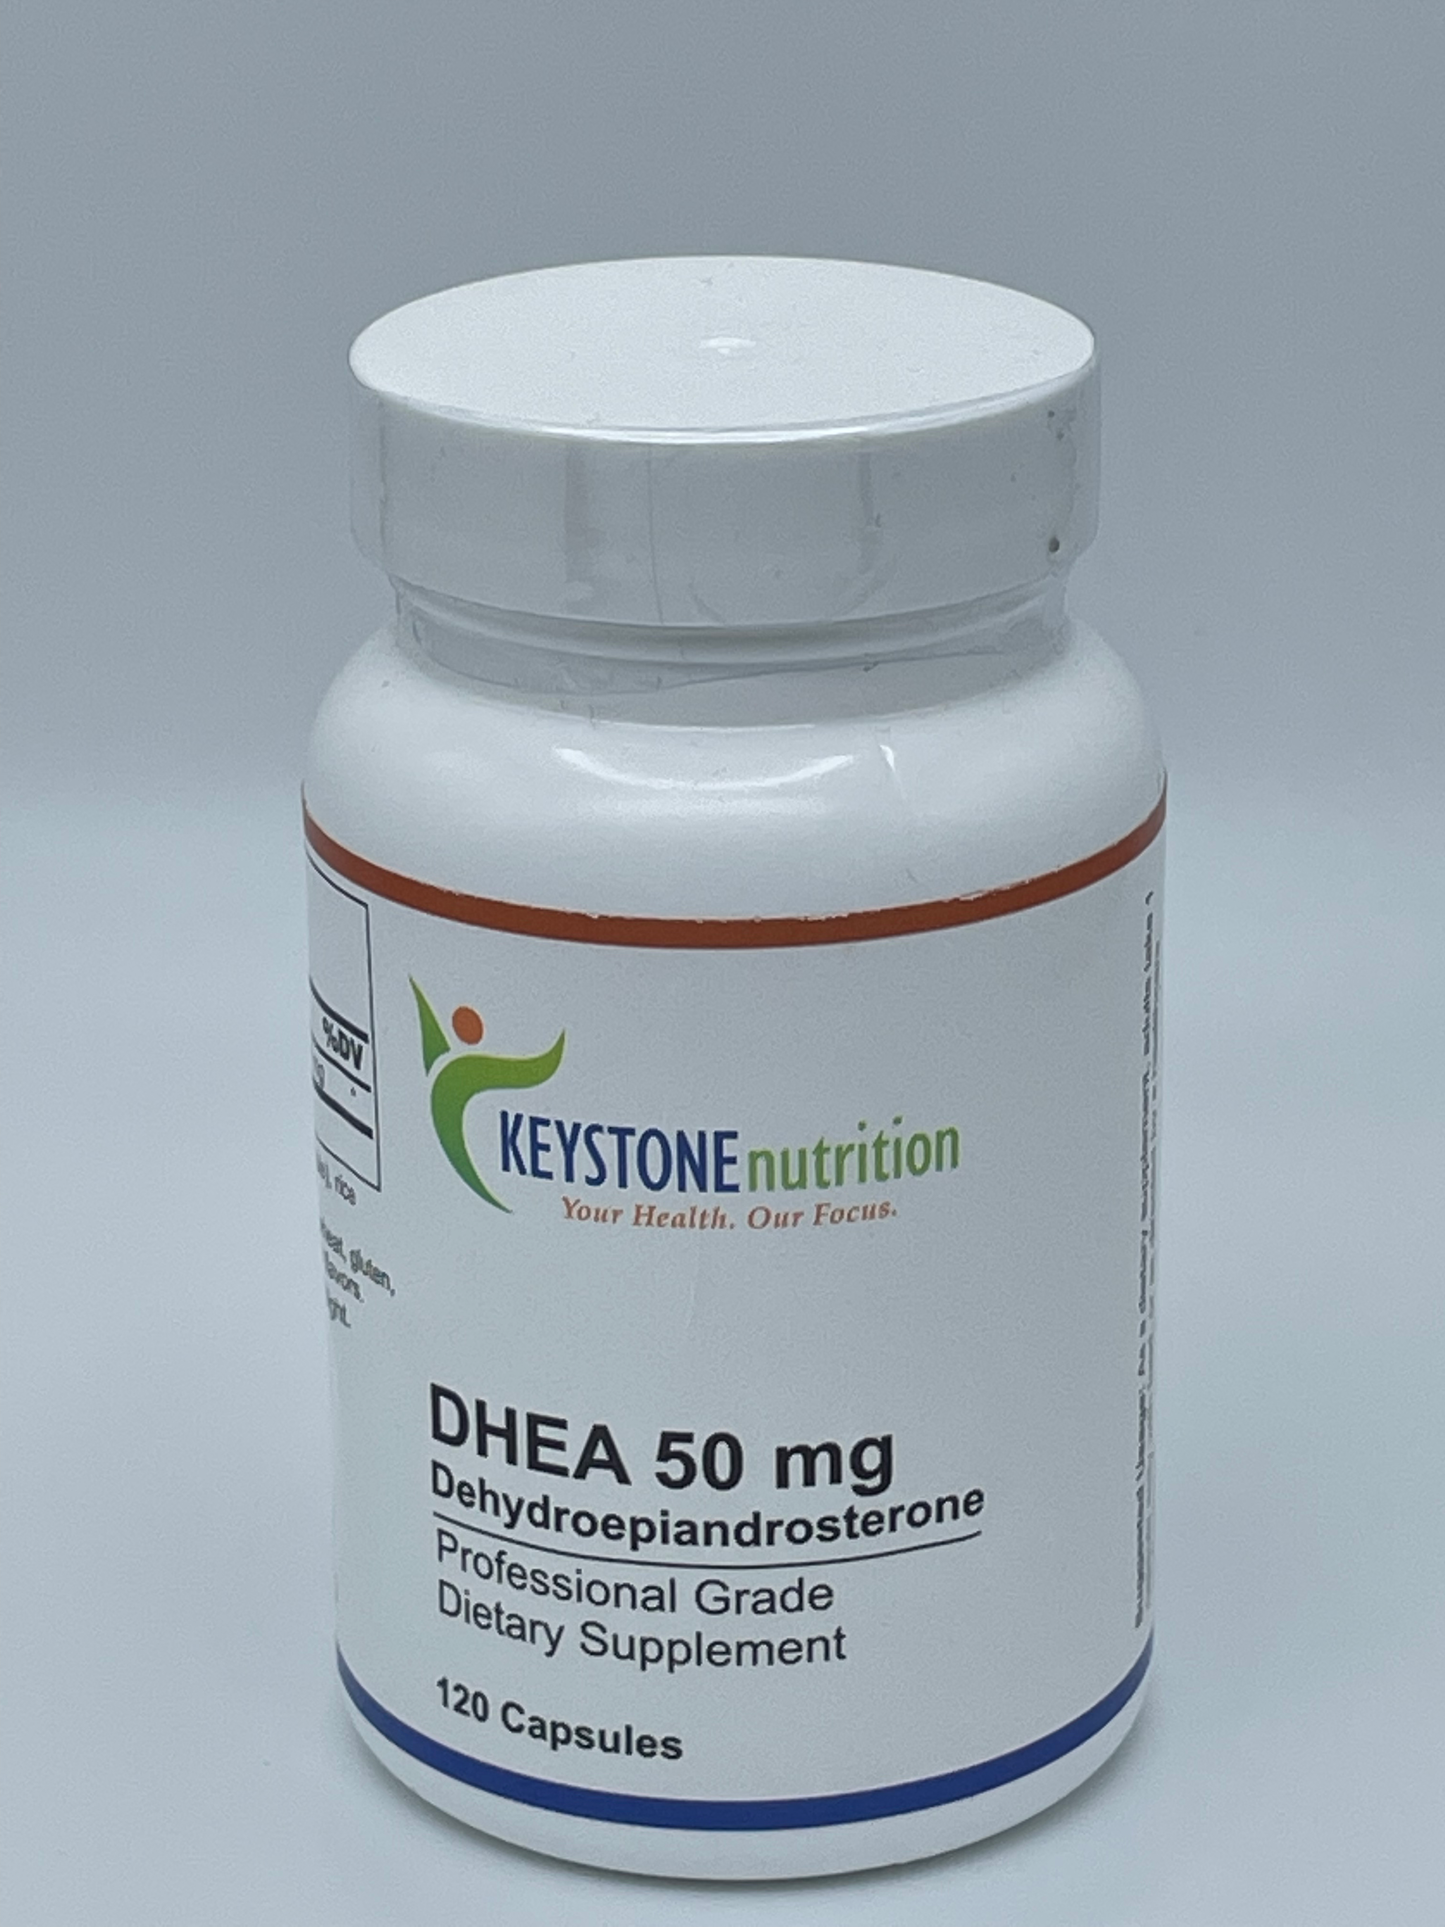 DHEA 50 mg / Dehydroepiandrosterone